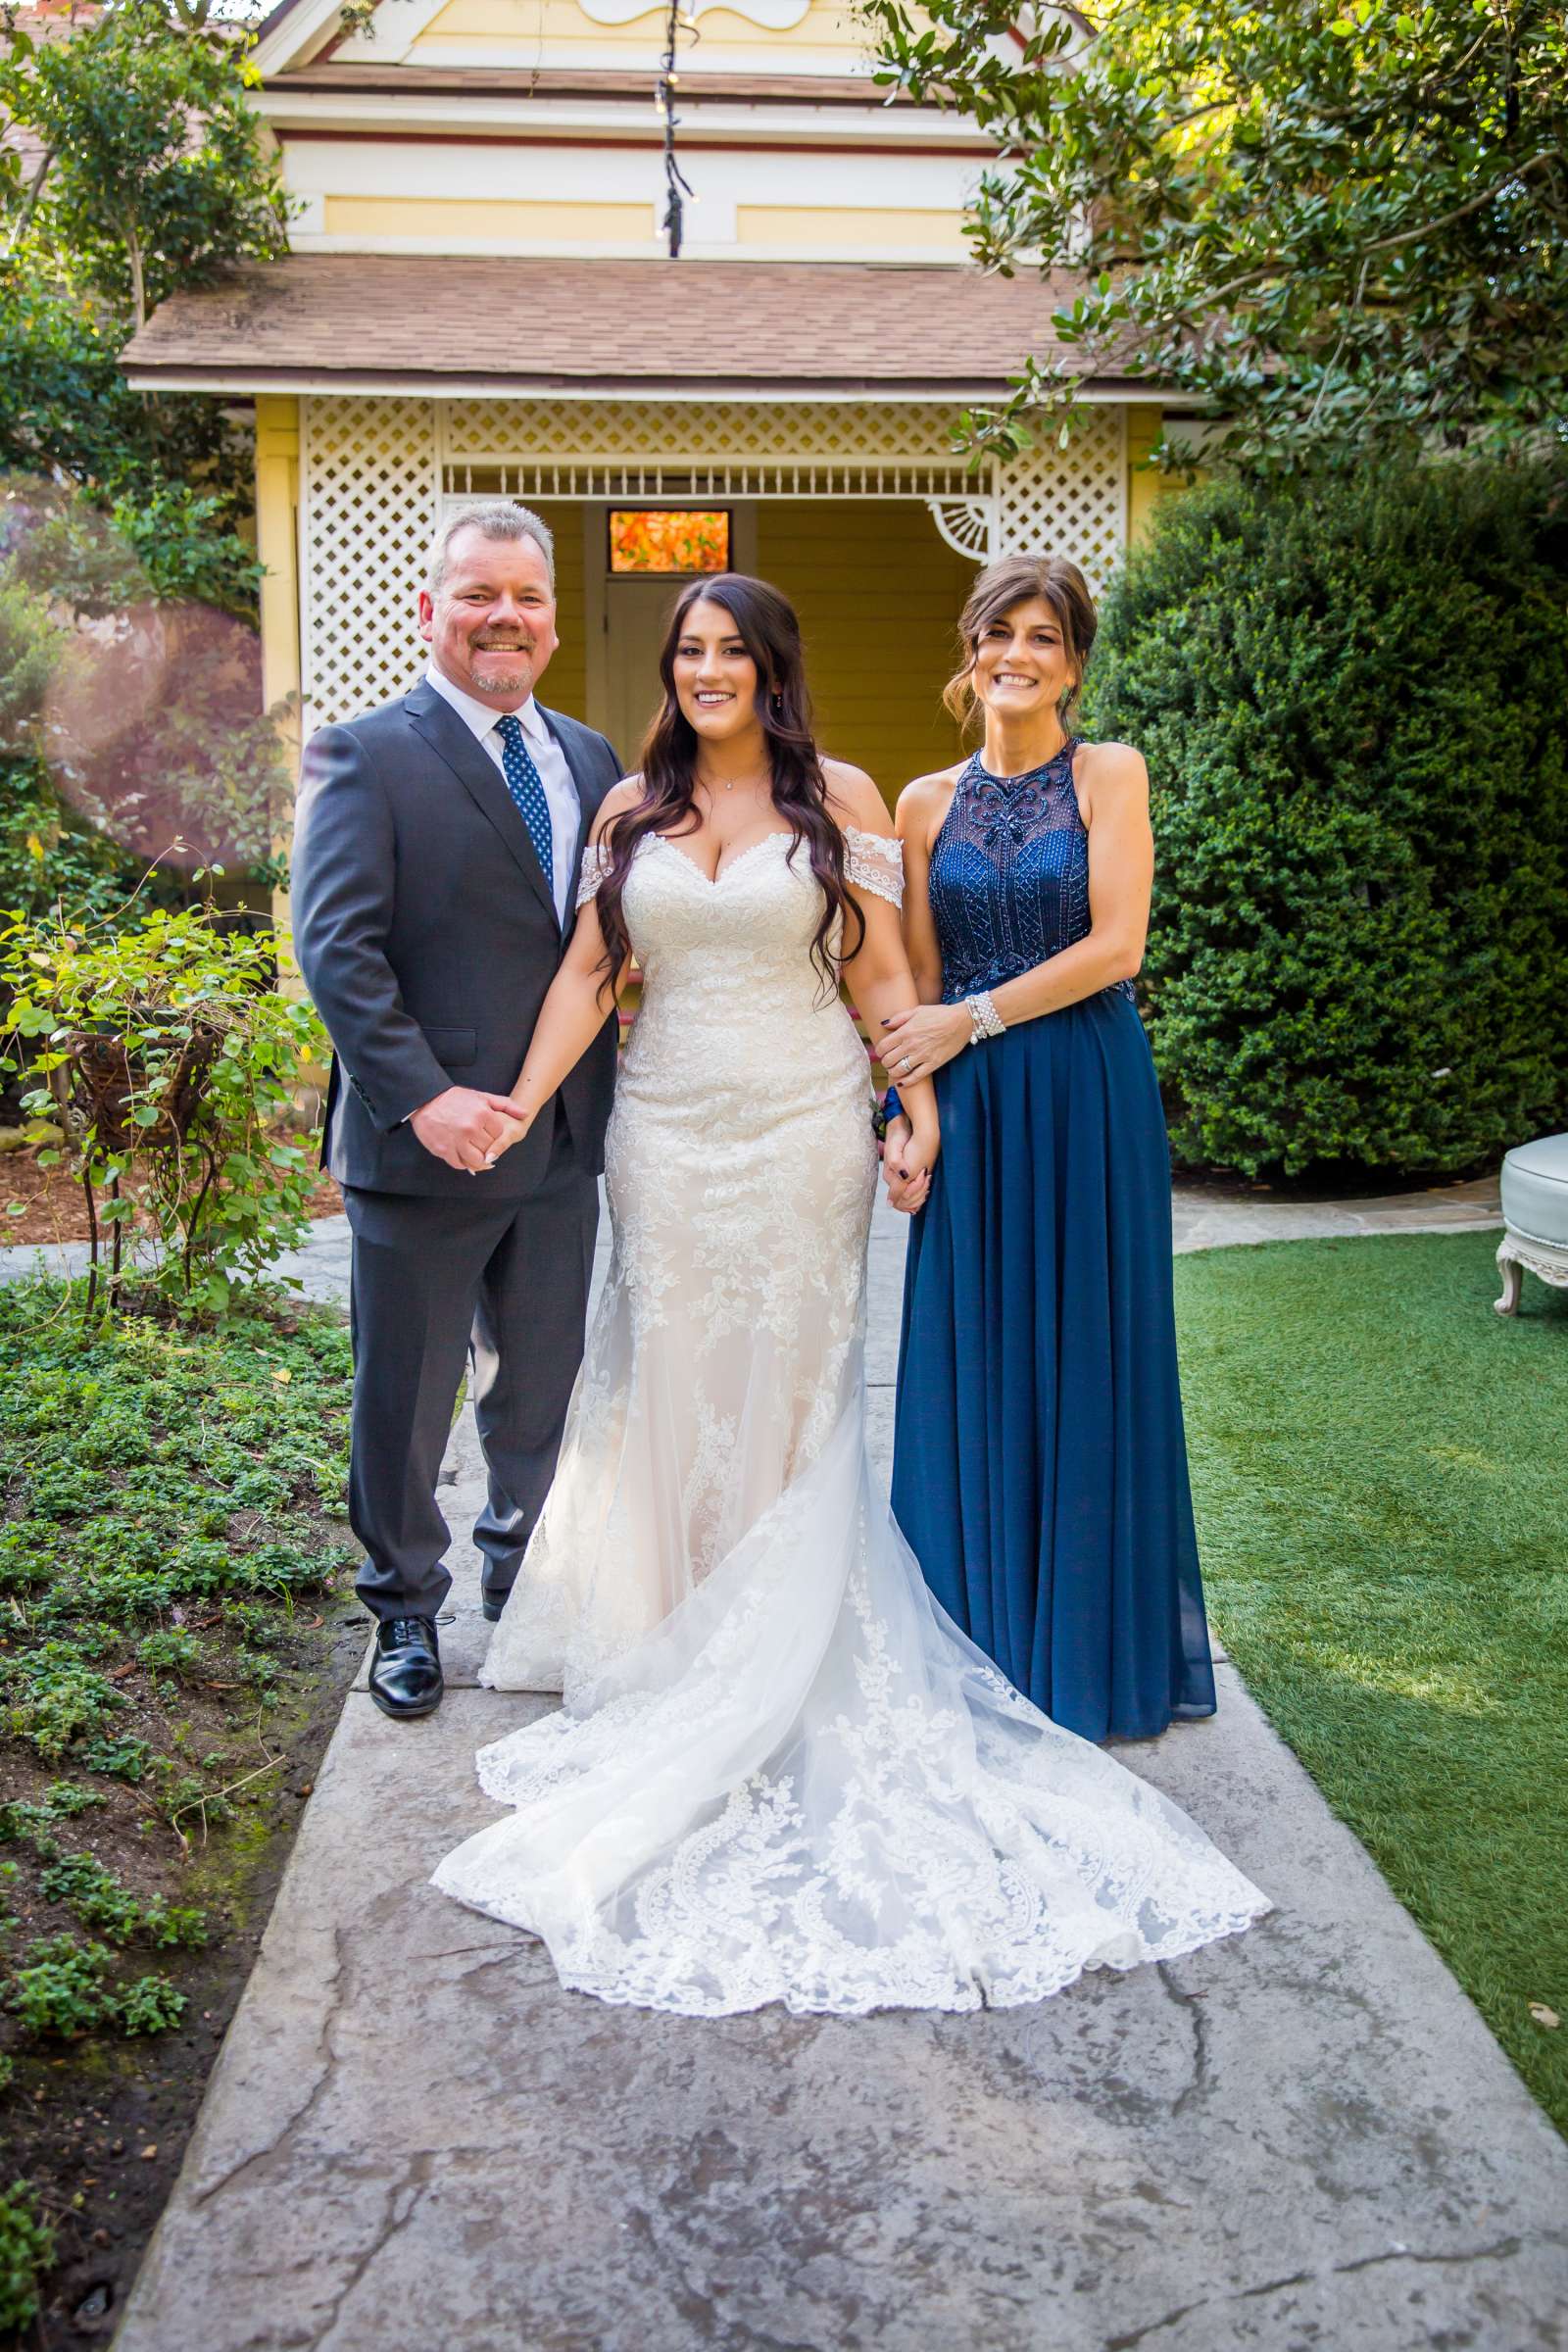 Twin Oaks House & Gardens Wedding Estate Wedding, Stephanie and Ilija Wedding Photo #57 by True Photography